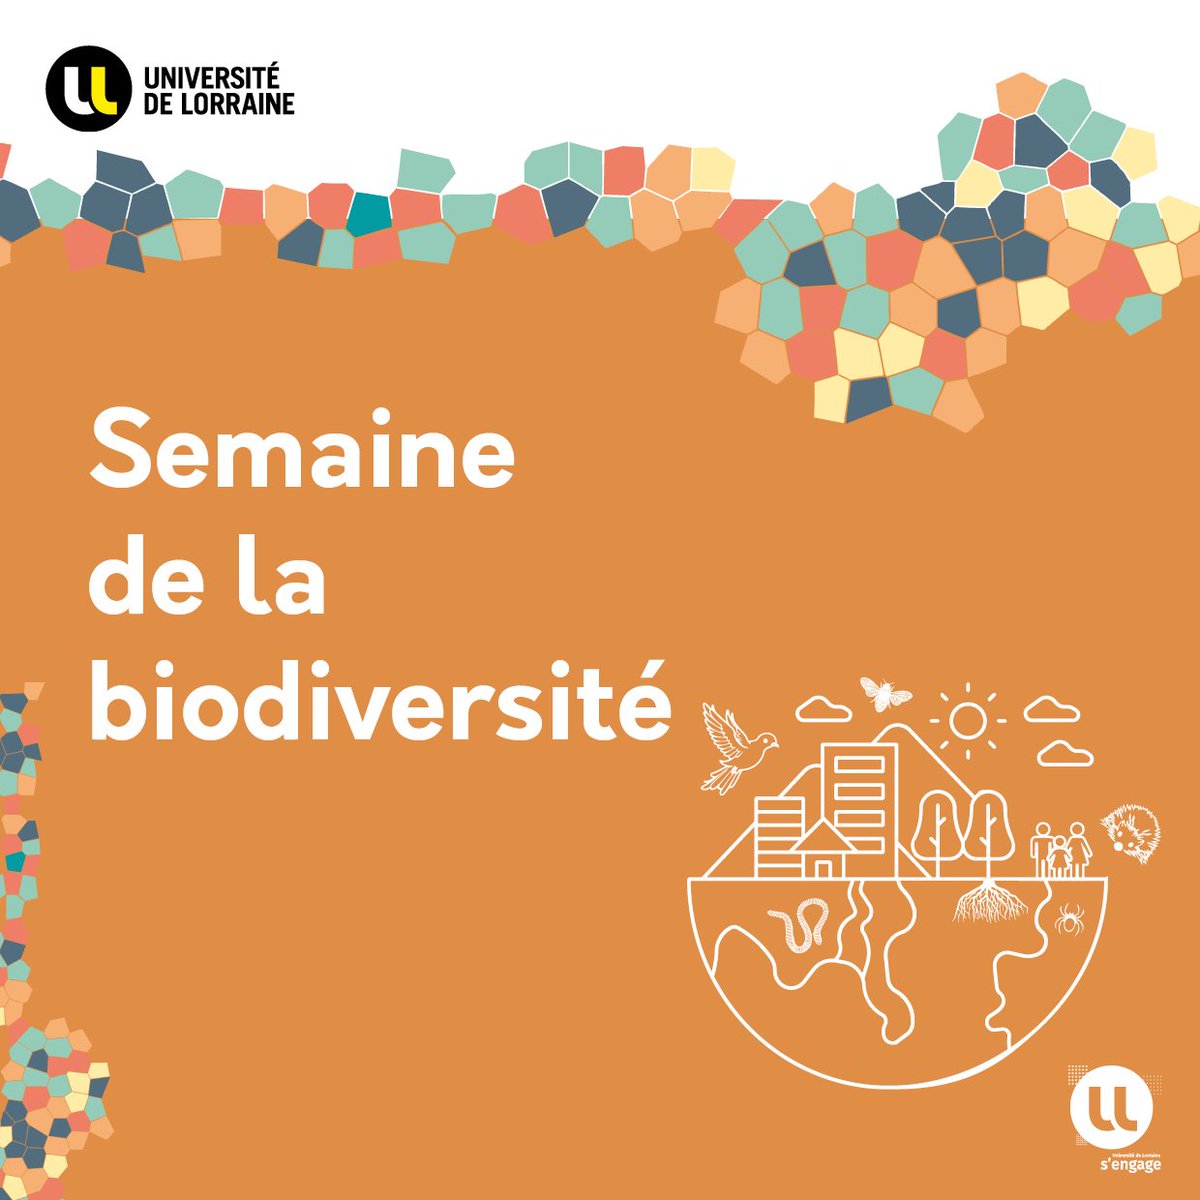 🌍 Du 21 mai au 1er juin, explorez la #biodiversité avec l'Université de Lorraine !
Au programme : fresques de la biodiversité, balades nature et articles d’information et de sensibilisation.
+d'infos 👉 factuel.univ-lorraine.fr/node/26709
#CampusVert #ULsengage